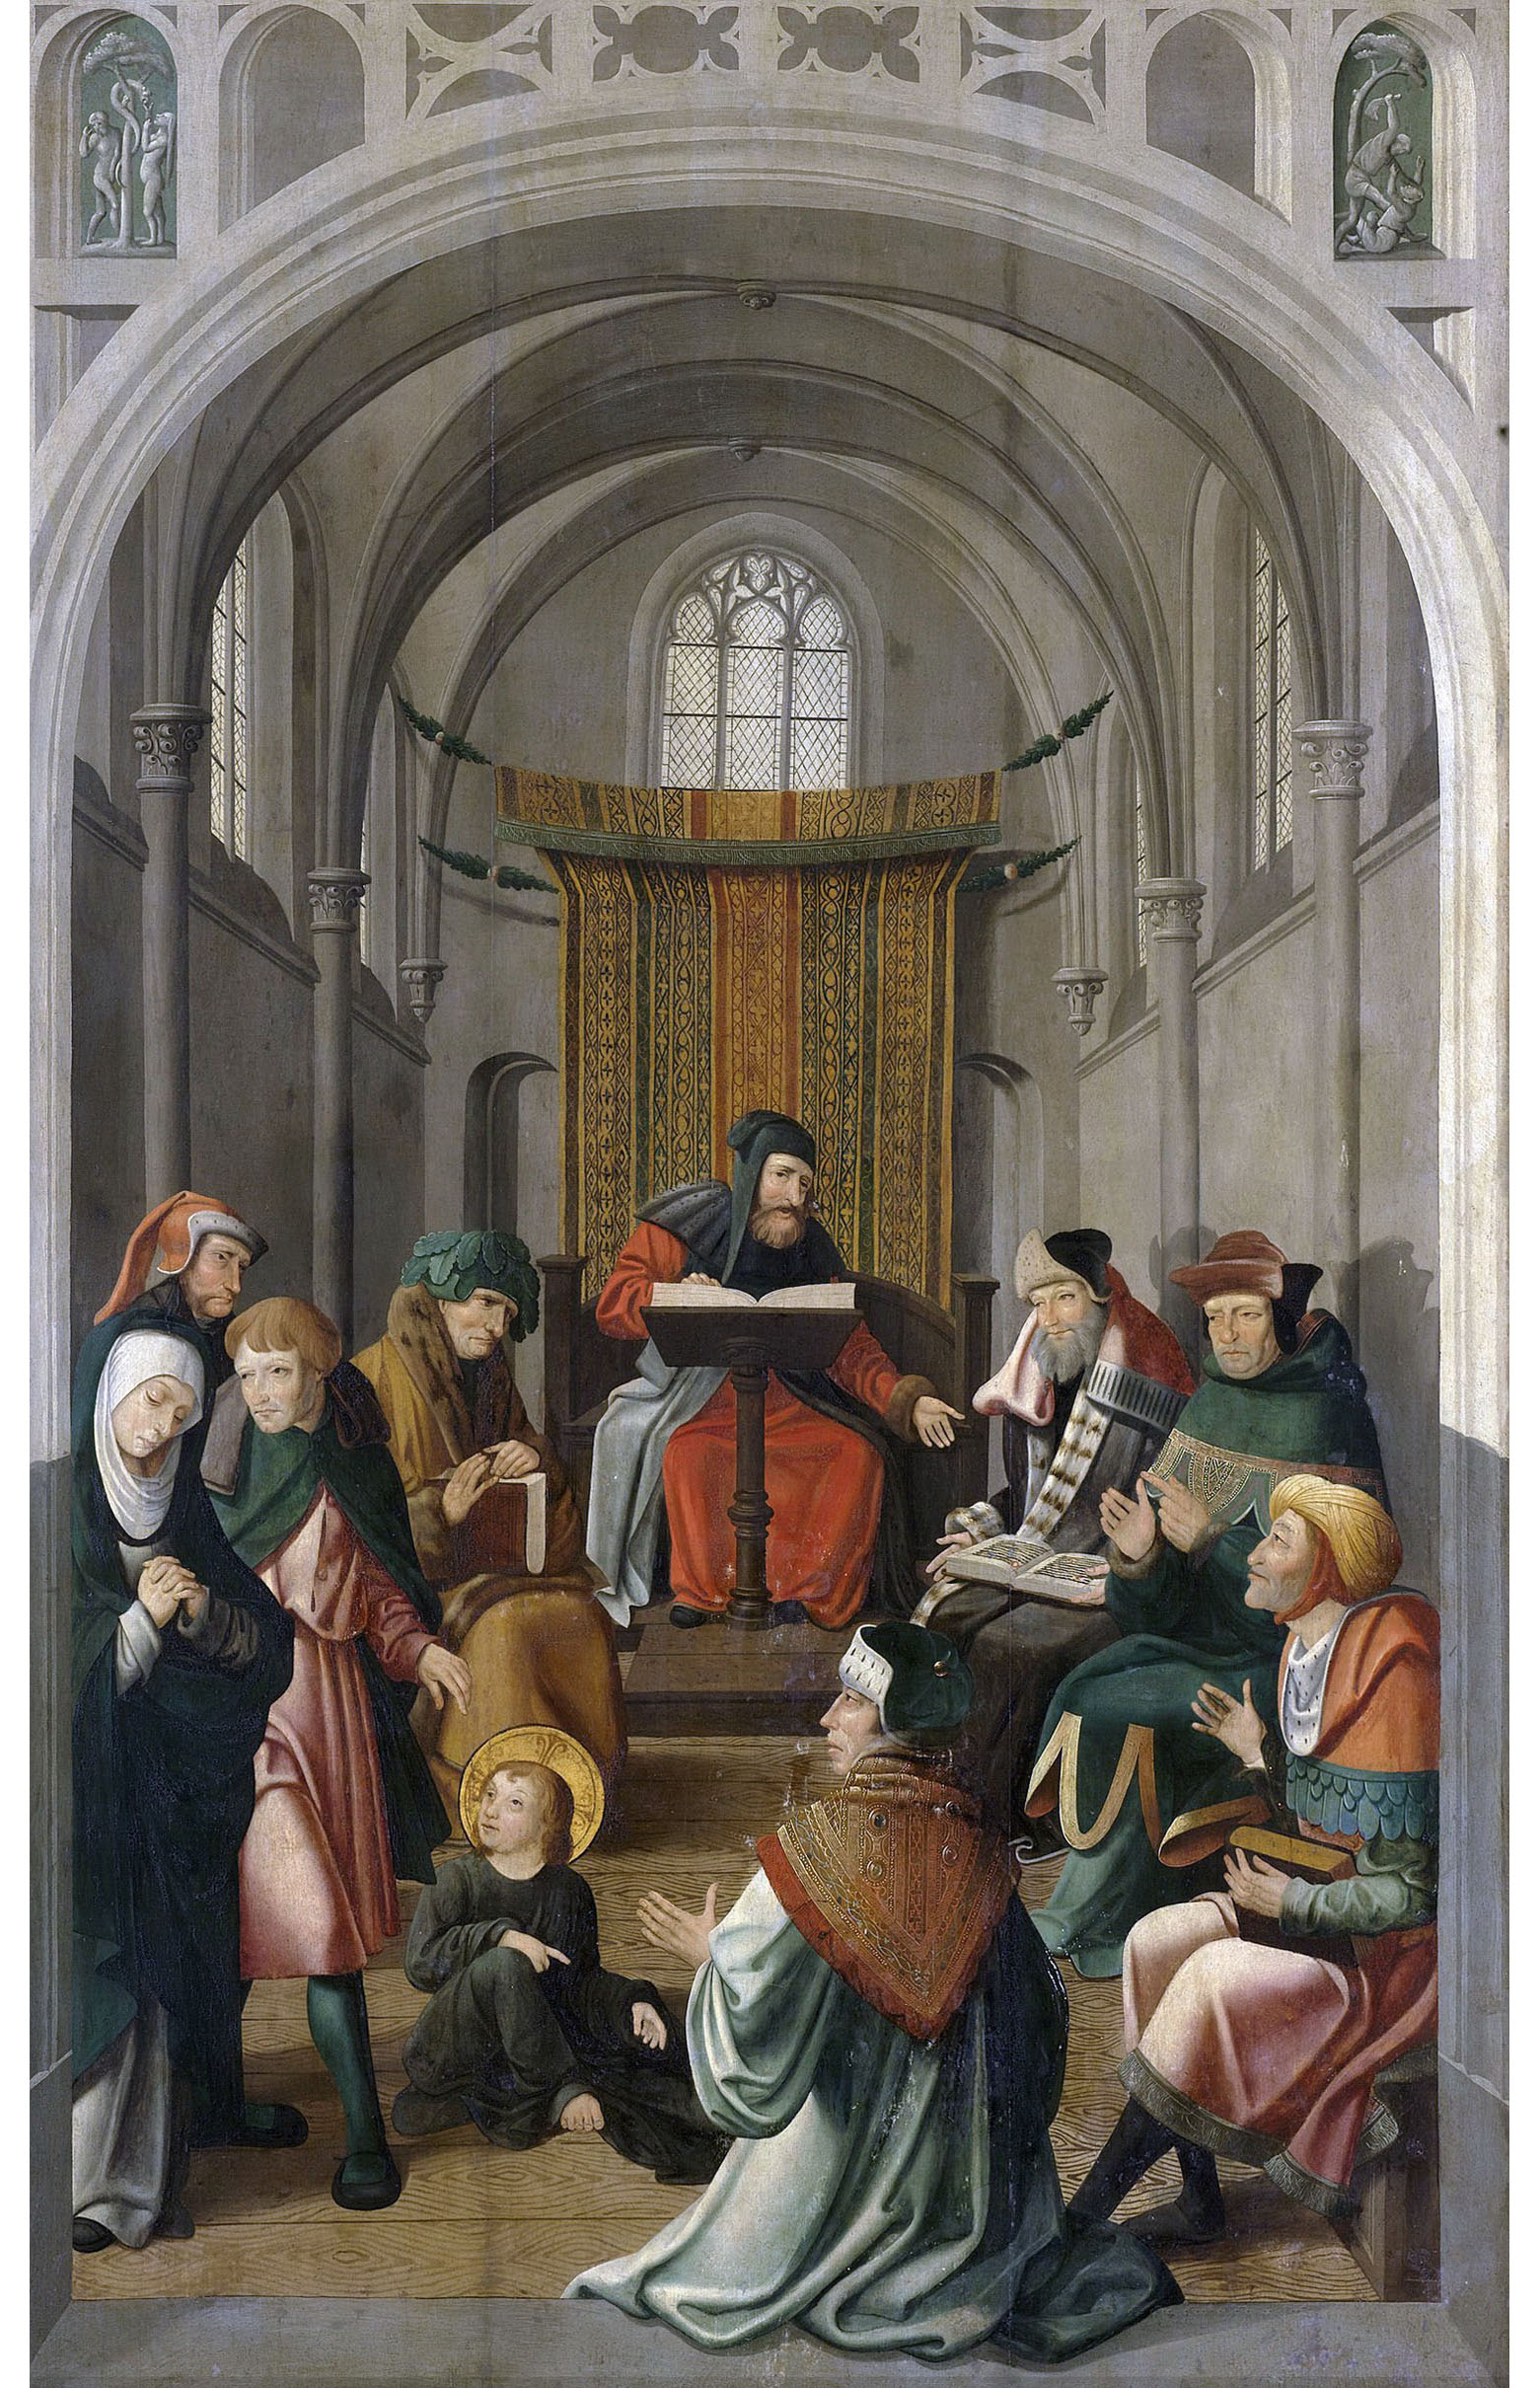 Мастер из Алкмара. "Отрок Христос среди израильских учителей". Панель алтарной композиции. 1520-1535.